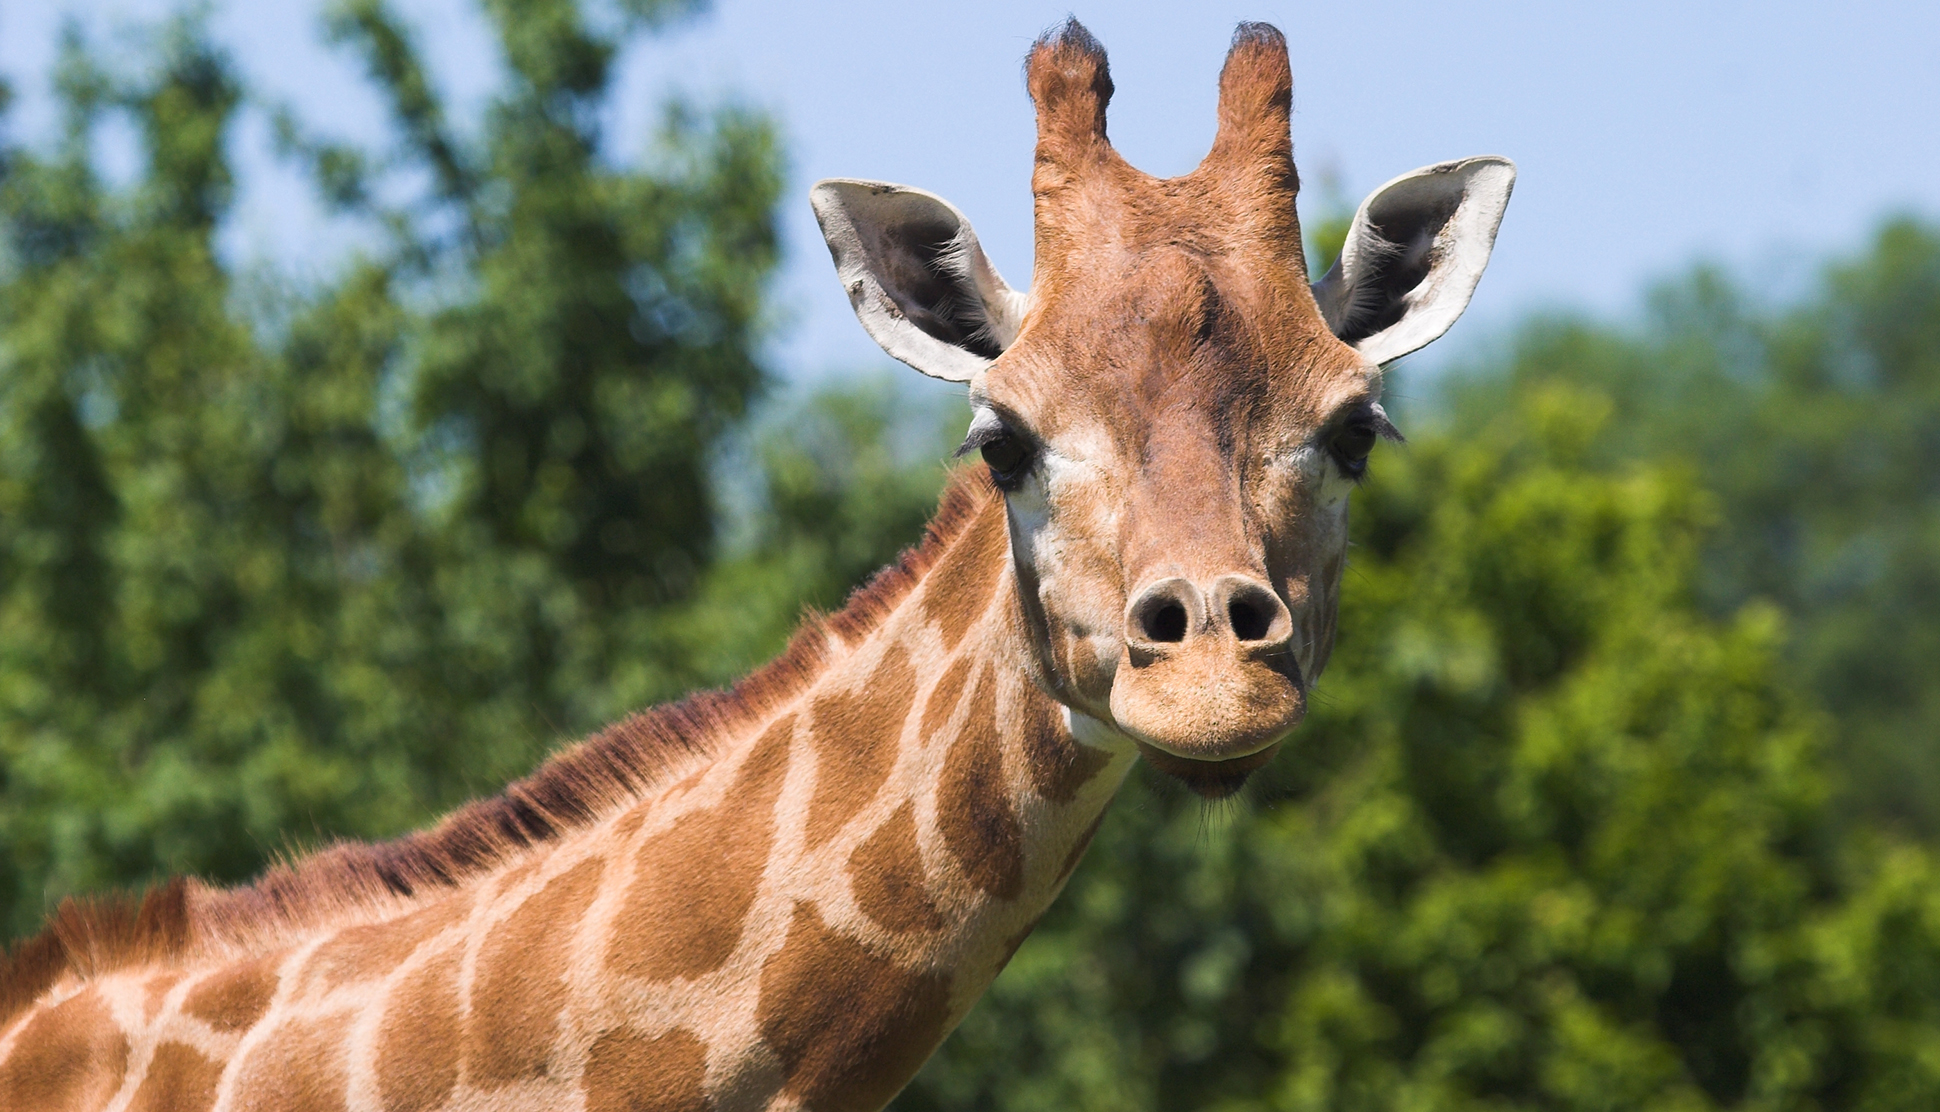 Virtually Visit Hampshire - Giraffe at Marwell Zoo